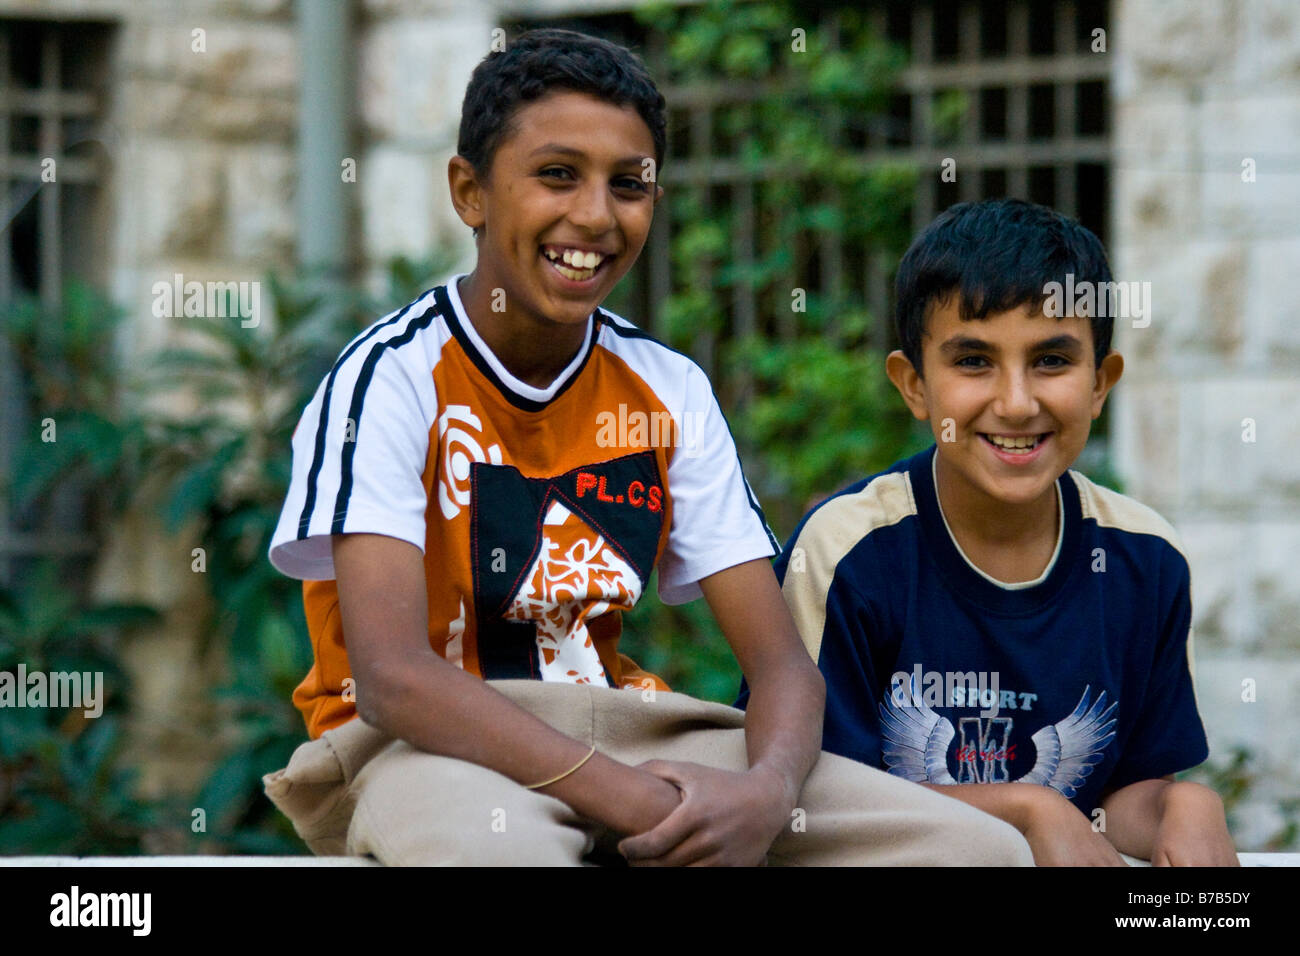 Joranian Boys in Amman Jordan Stock Photo